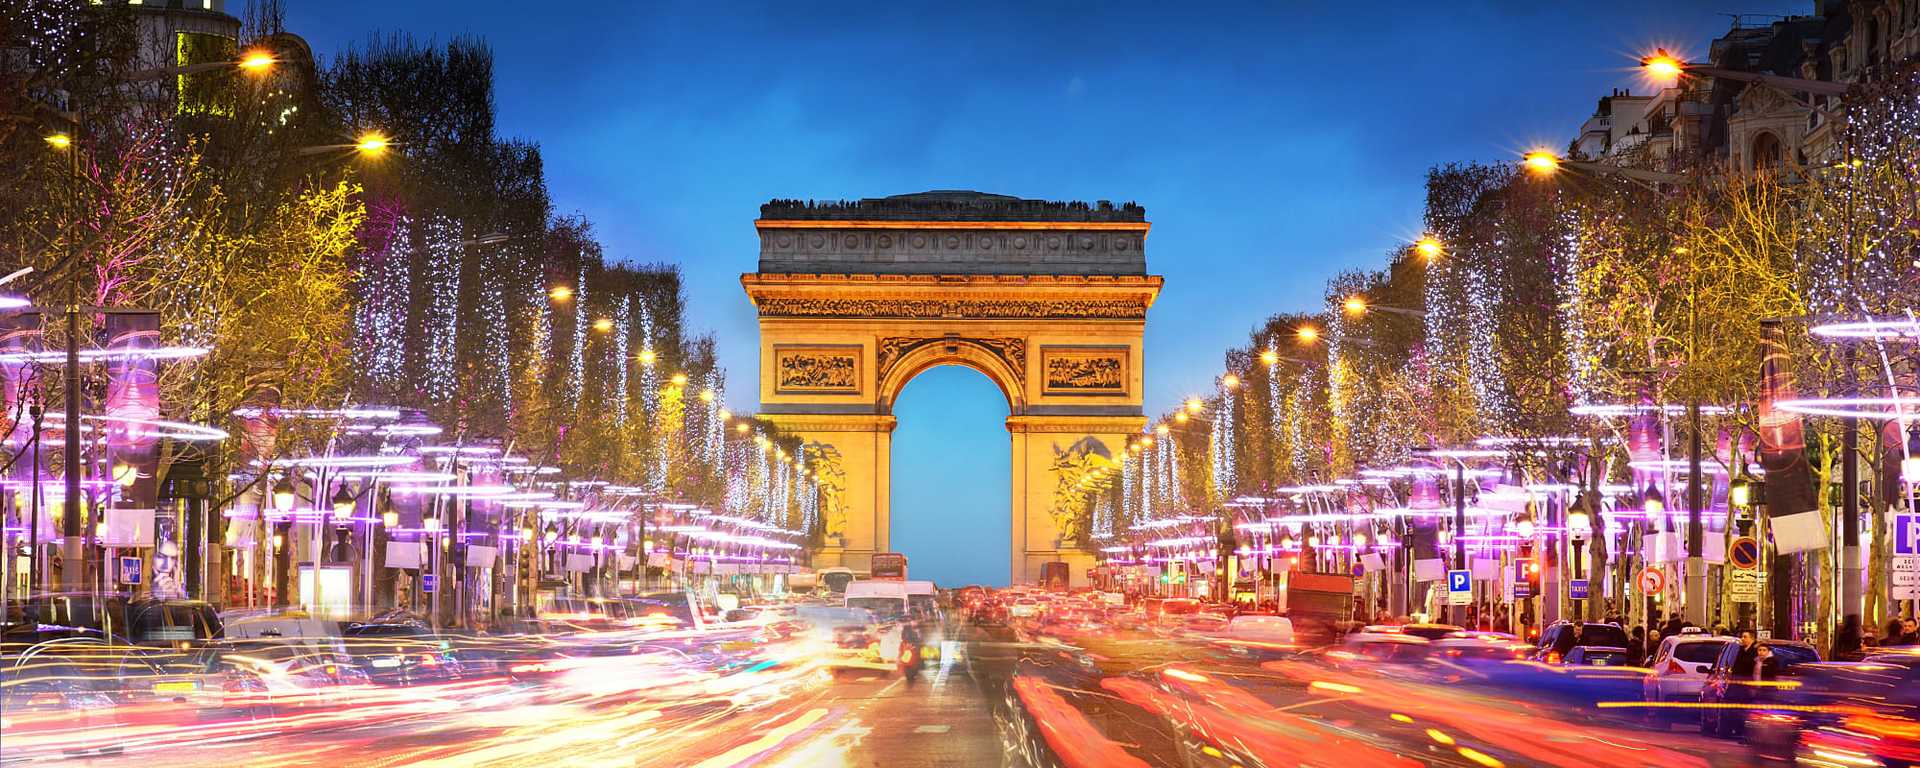 Arc de Triomphe on the Champs-Élysées at twilight in Paris, France